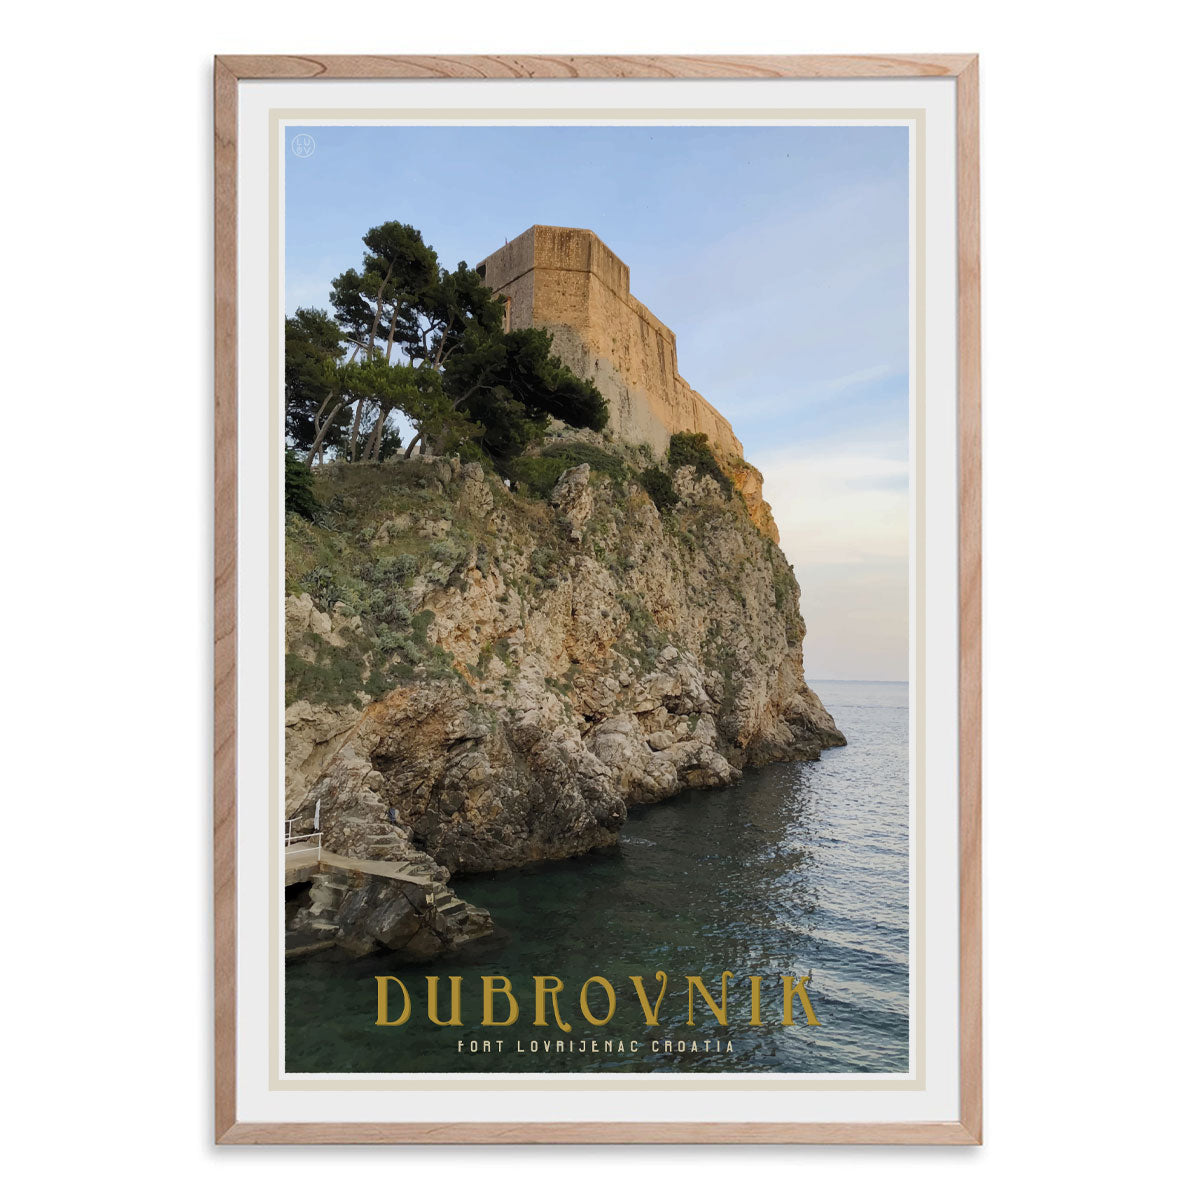 Dubrovnik vintage travel style oak framed poster by places we luv